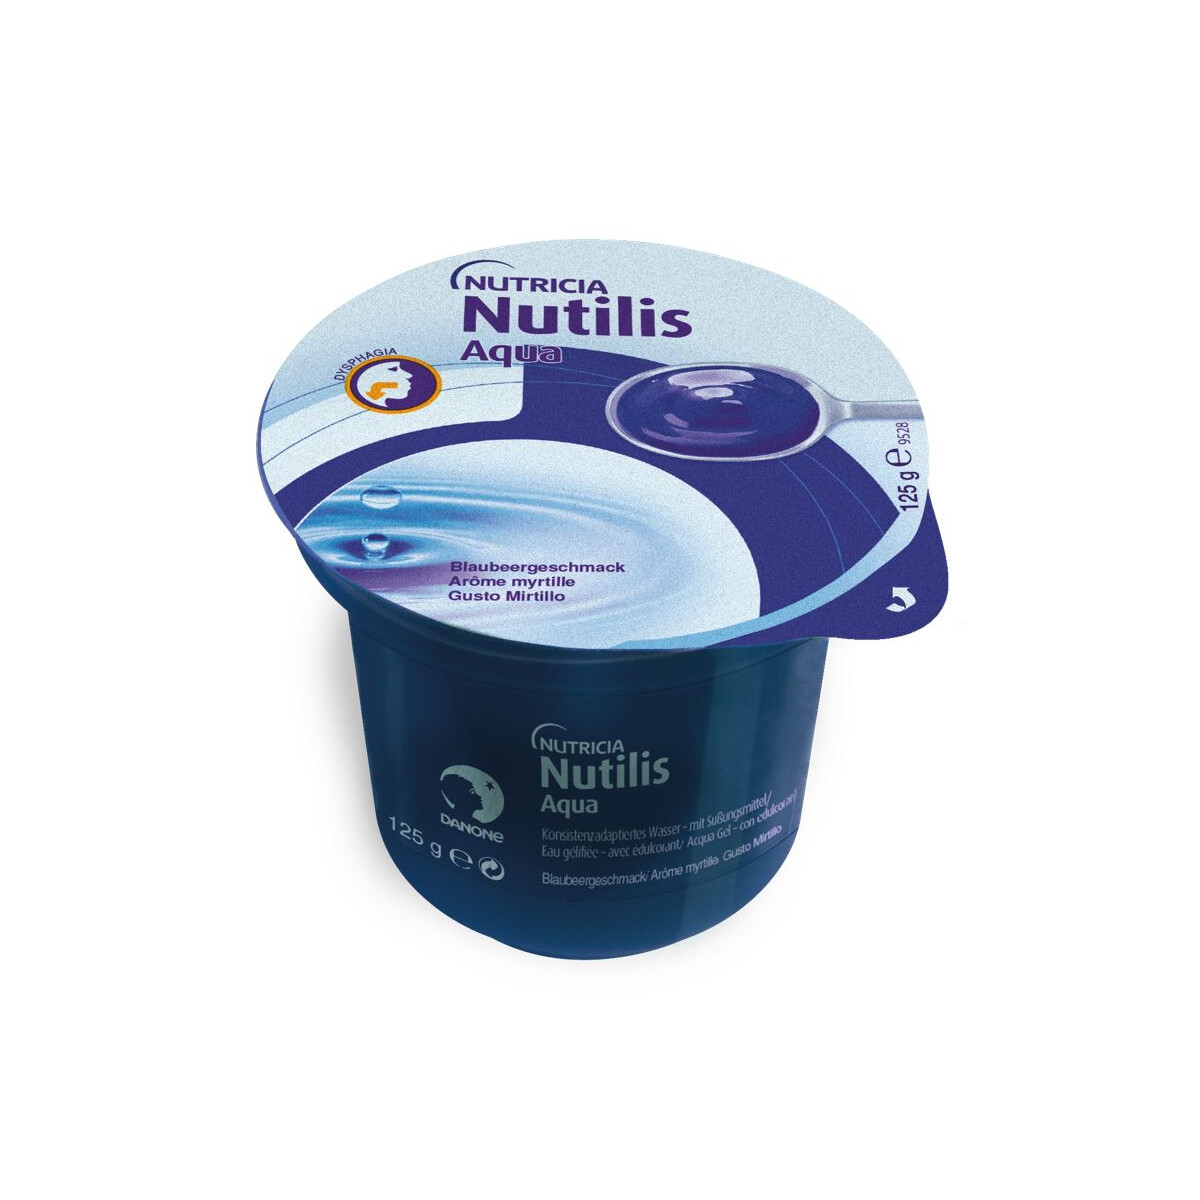 Nutilis Aqua Ab 125g Verschiedene Geschmackssorten 1 99